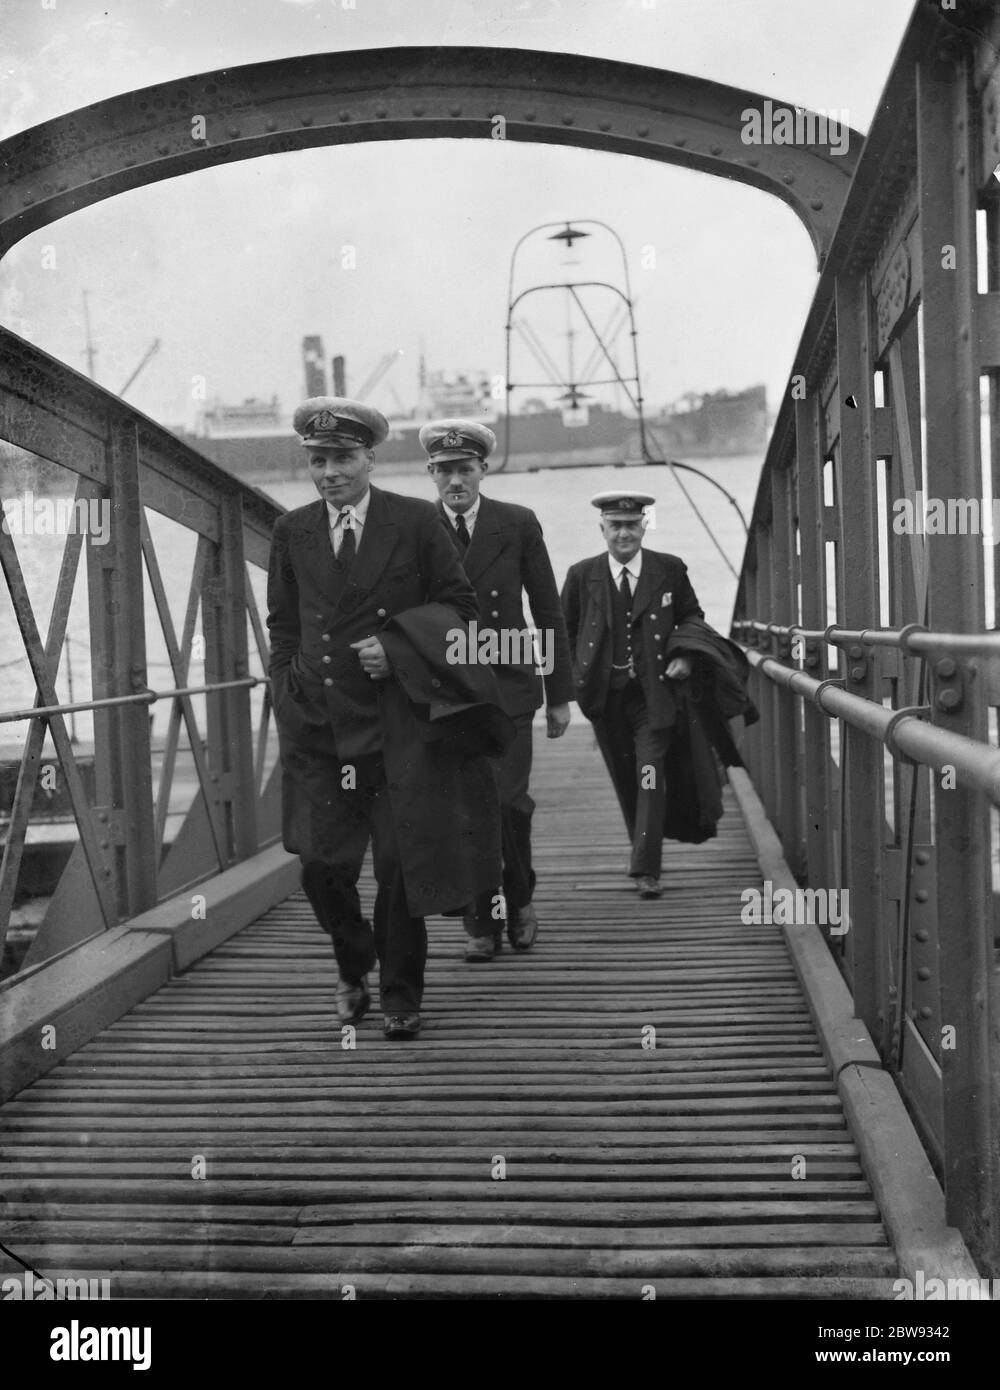 Thames Piloten in Gravesend, Kent, die Schiffen helfen, durch die verstopften Gewässer des Hafens zu navigieren. S H Walker, W M Reekie und W H Simmons Ankunft an Land. 1939 Stockfoto